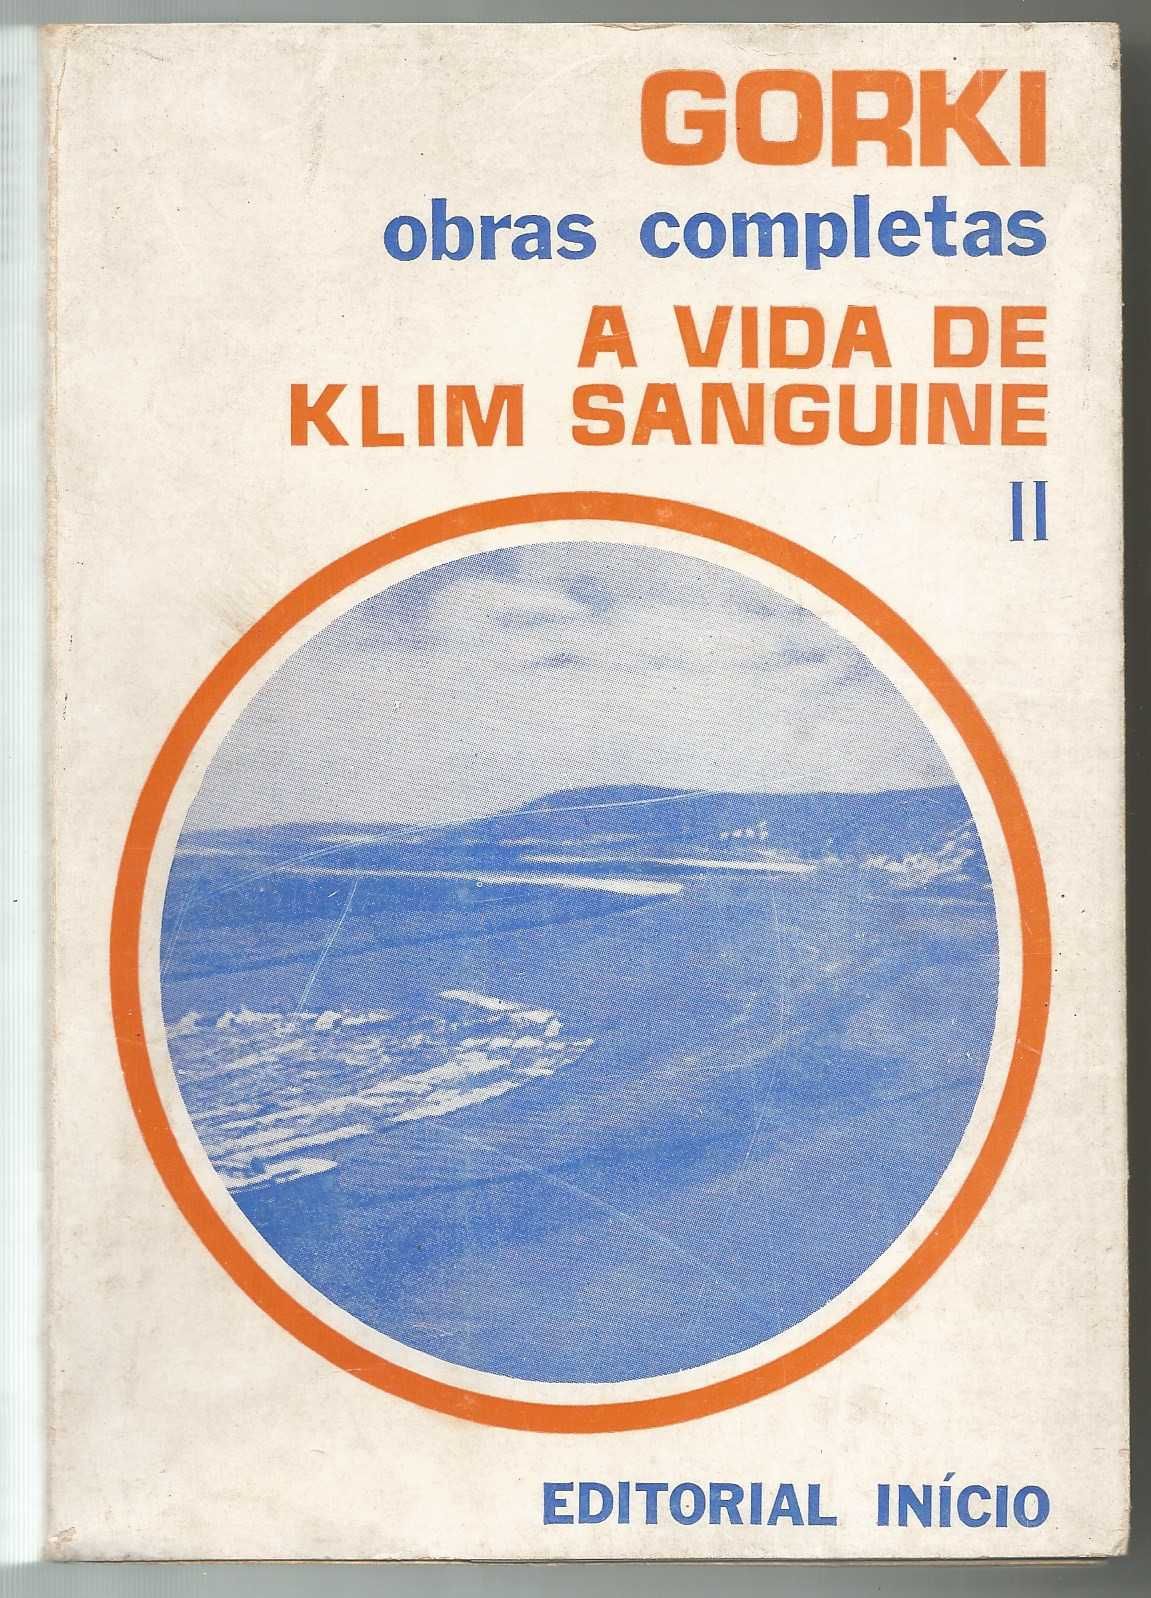 Gorki - A vida de Klim Sanguine (Volume II)